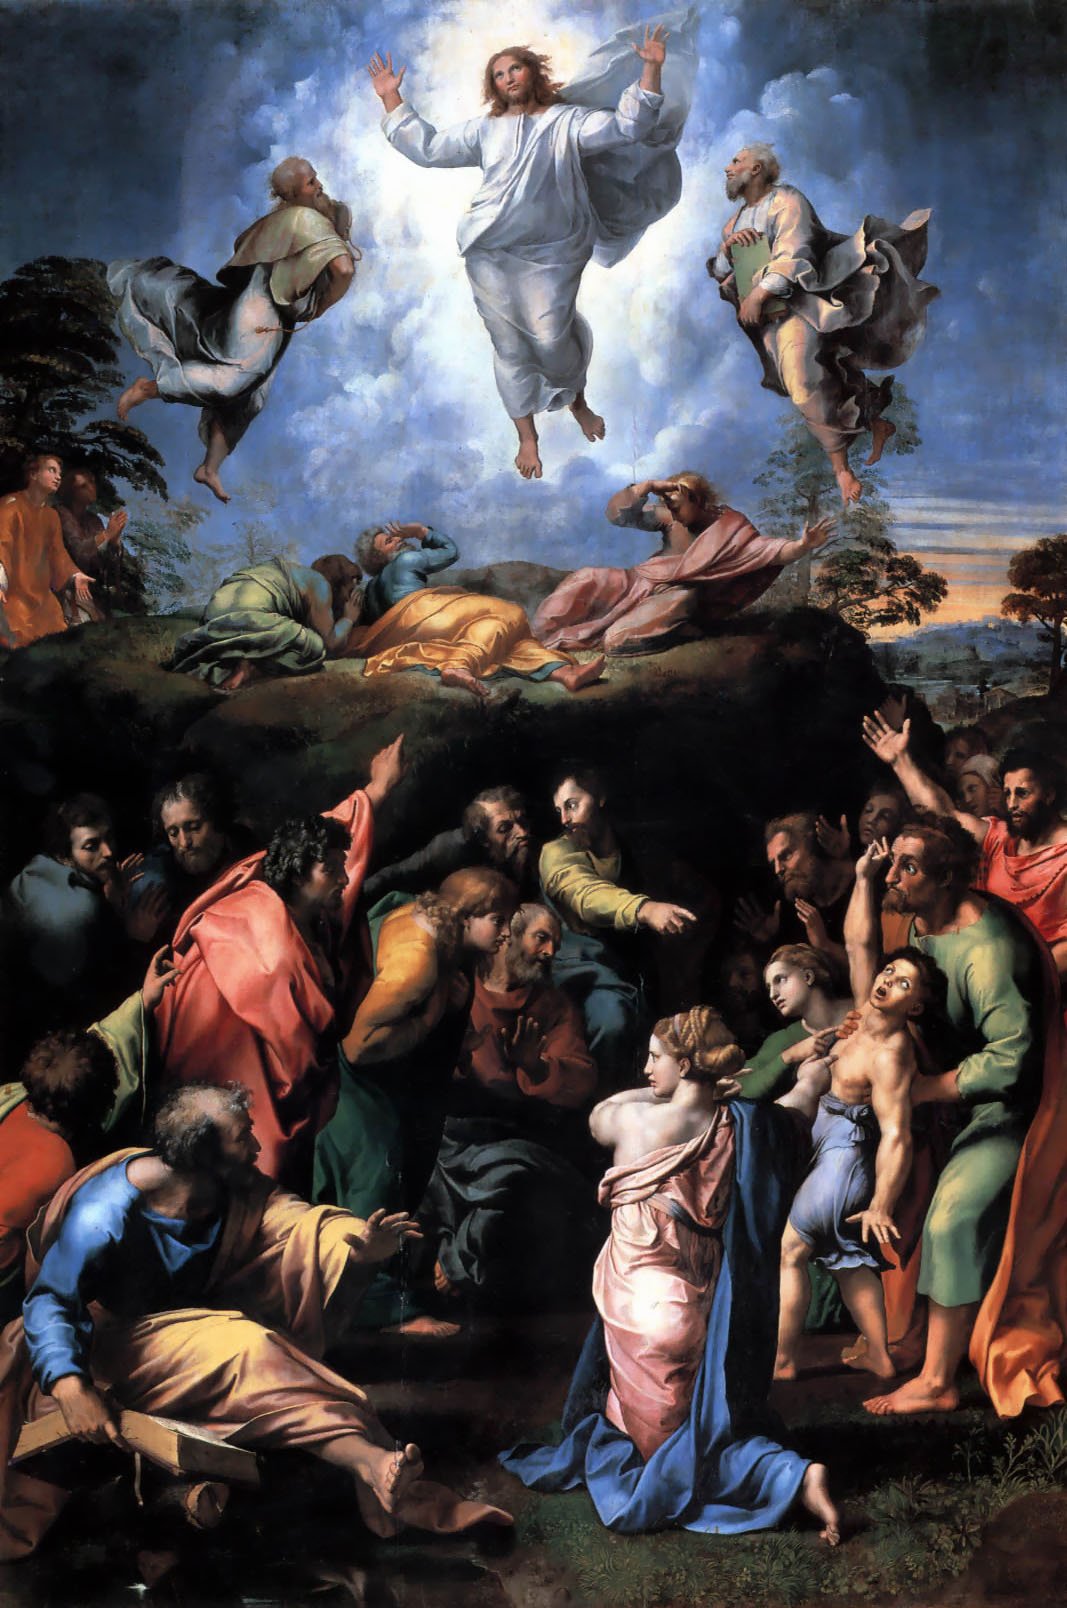 Chúa hiển dung dưới mắt của danh họa Raphael